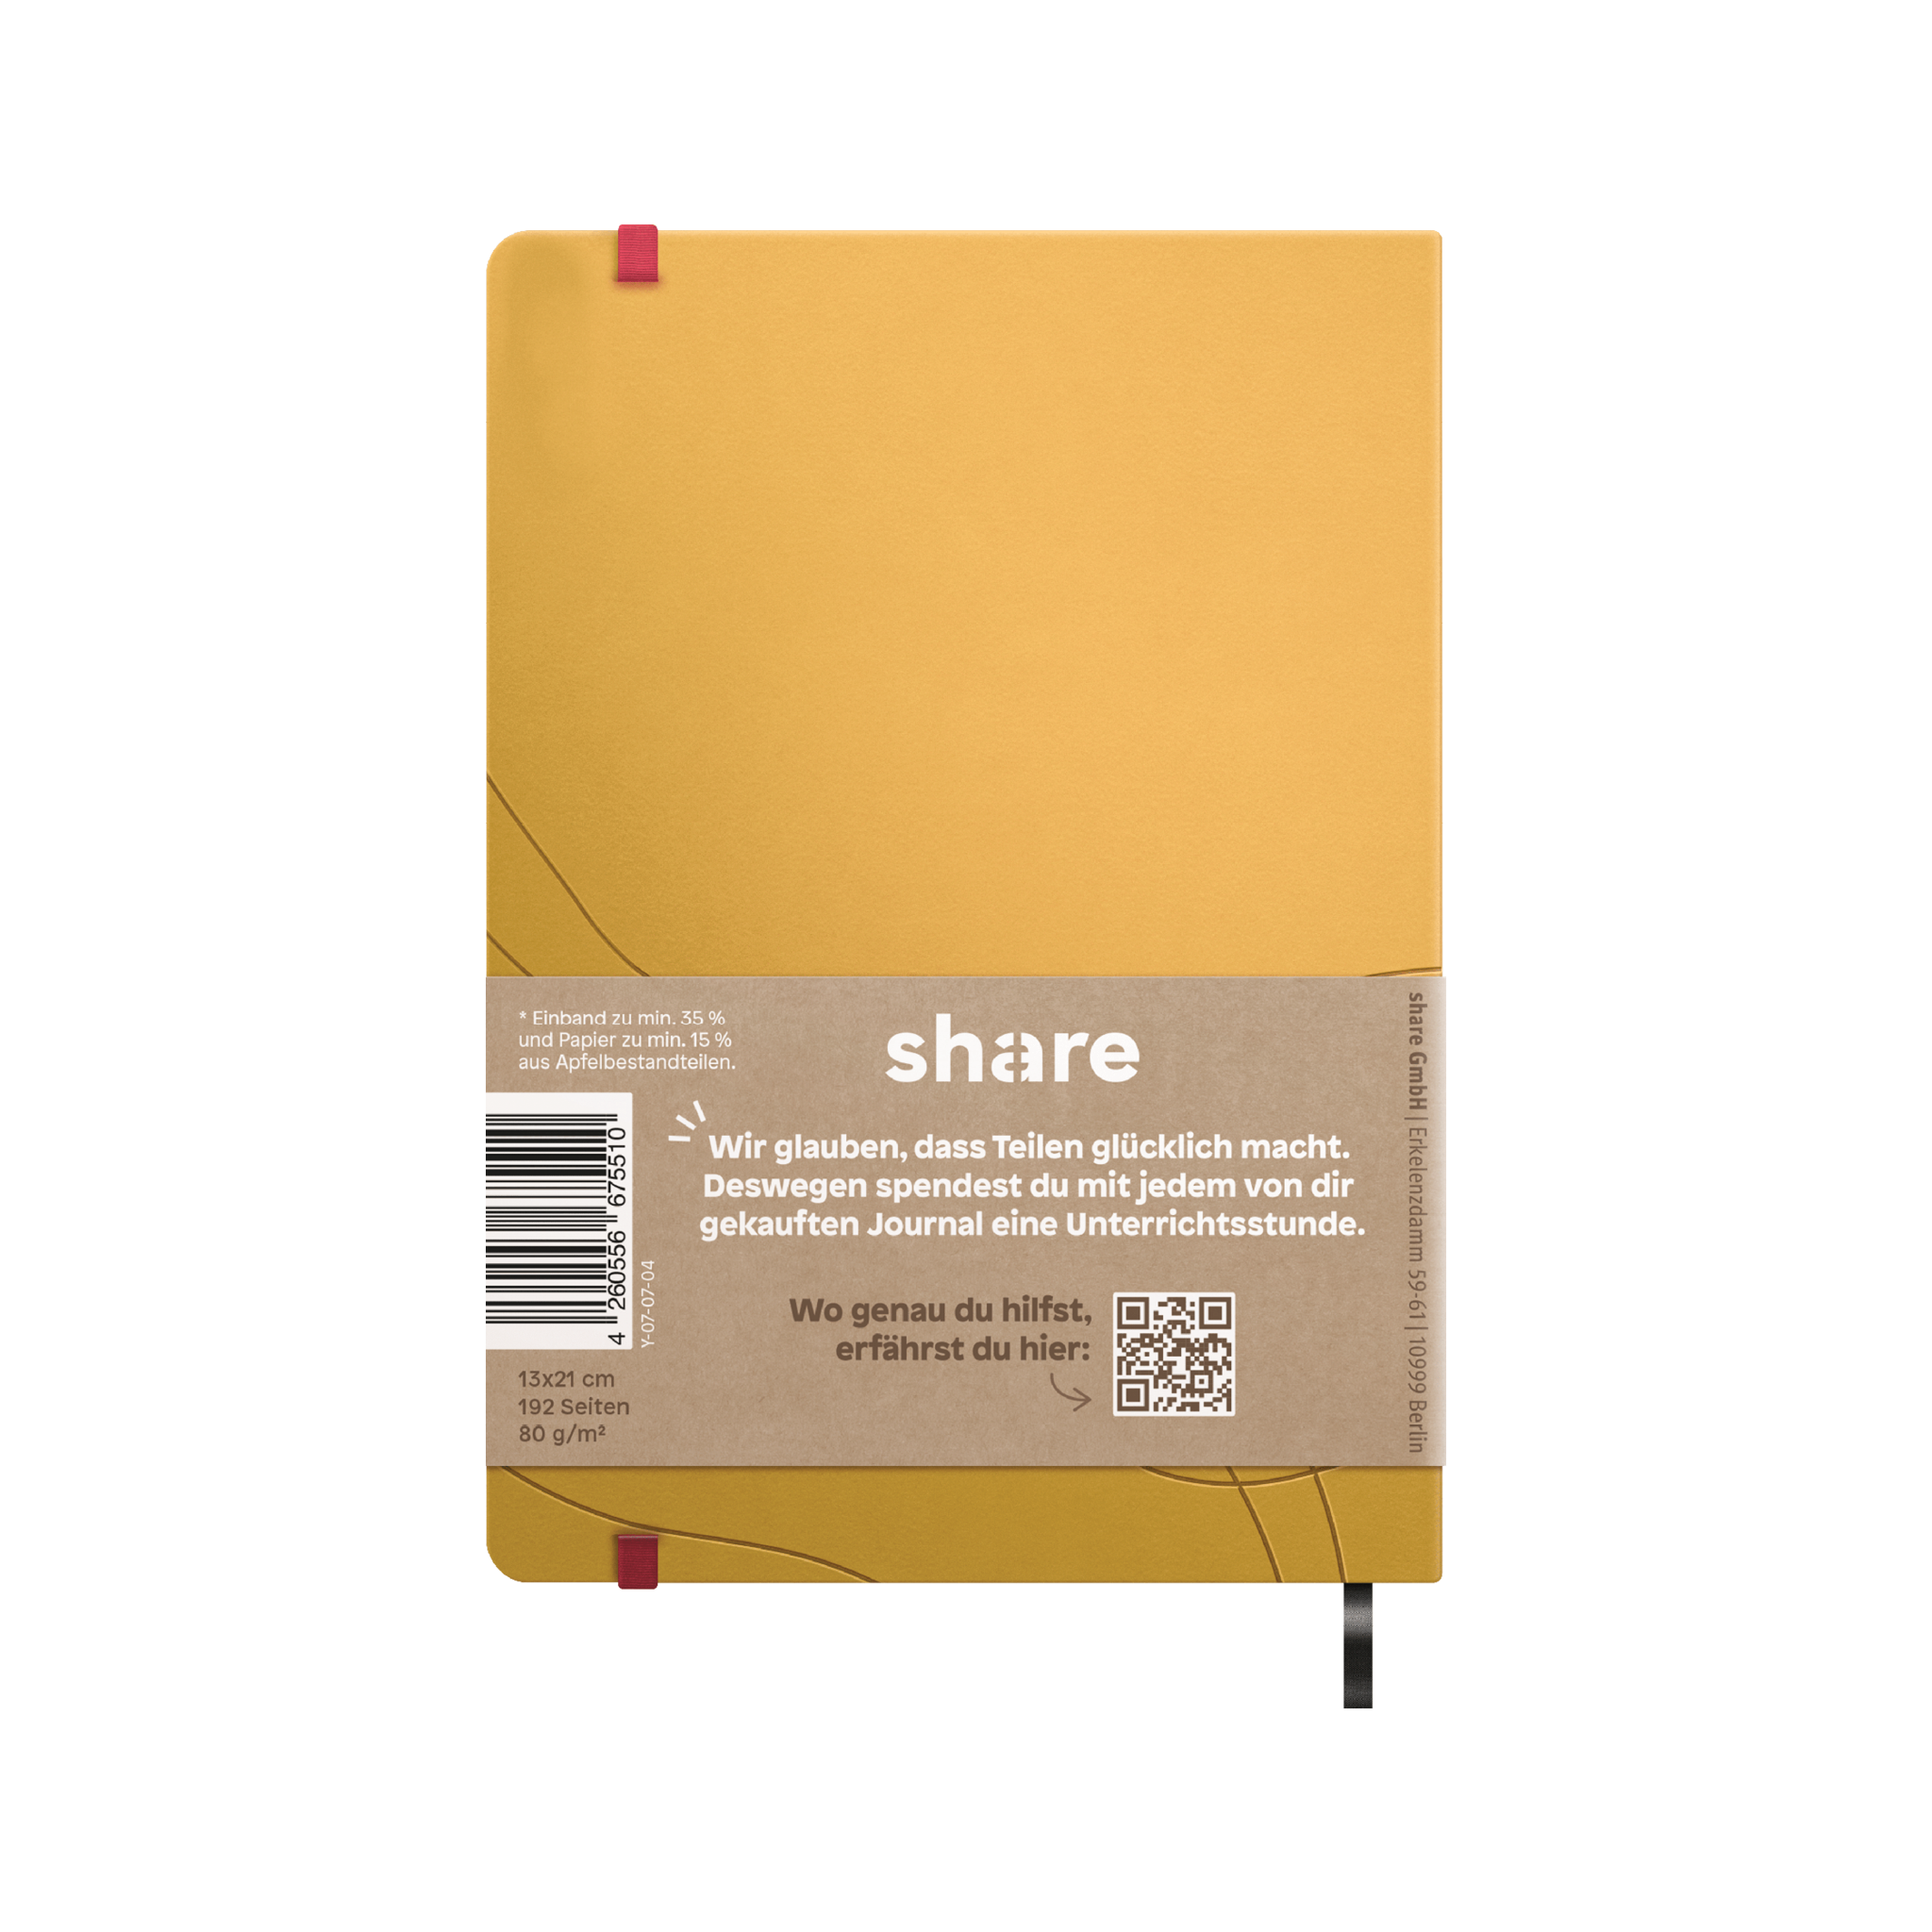 Ein lila Share Notizbuch A5 mit einem elastischen Verschluss und einem braunen Kraftpapieretikett unten, das eine Bildungsinitiative fördert.